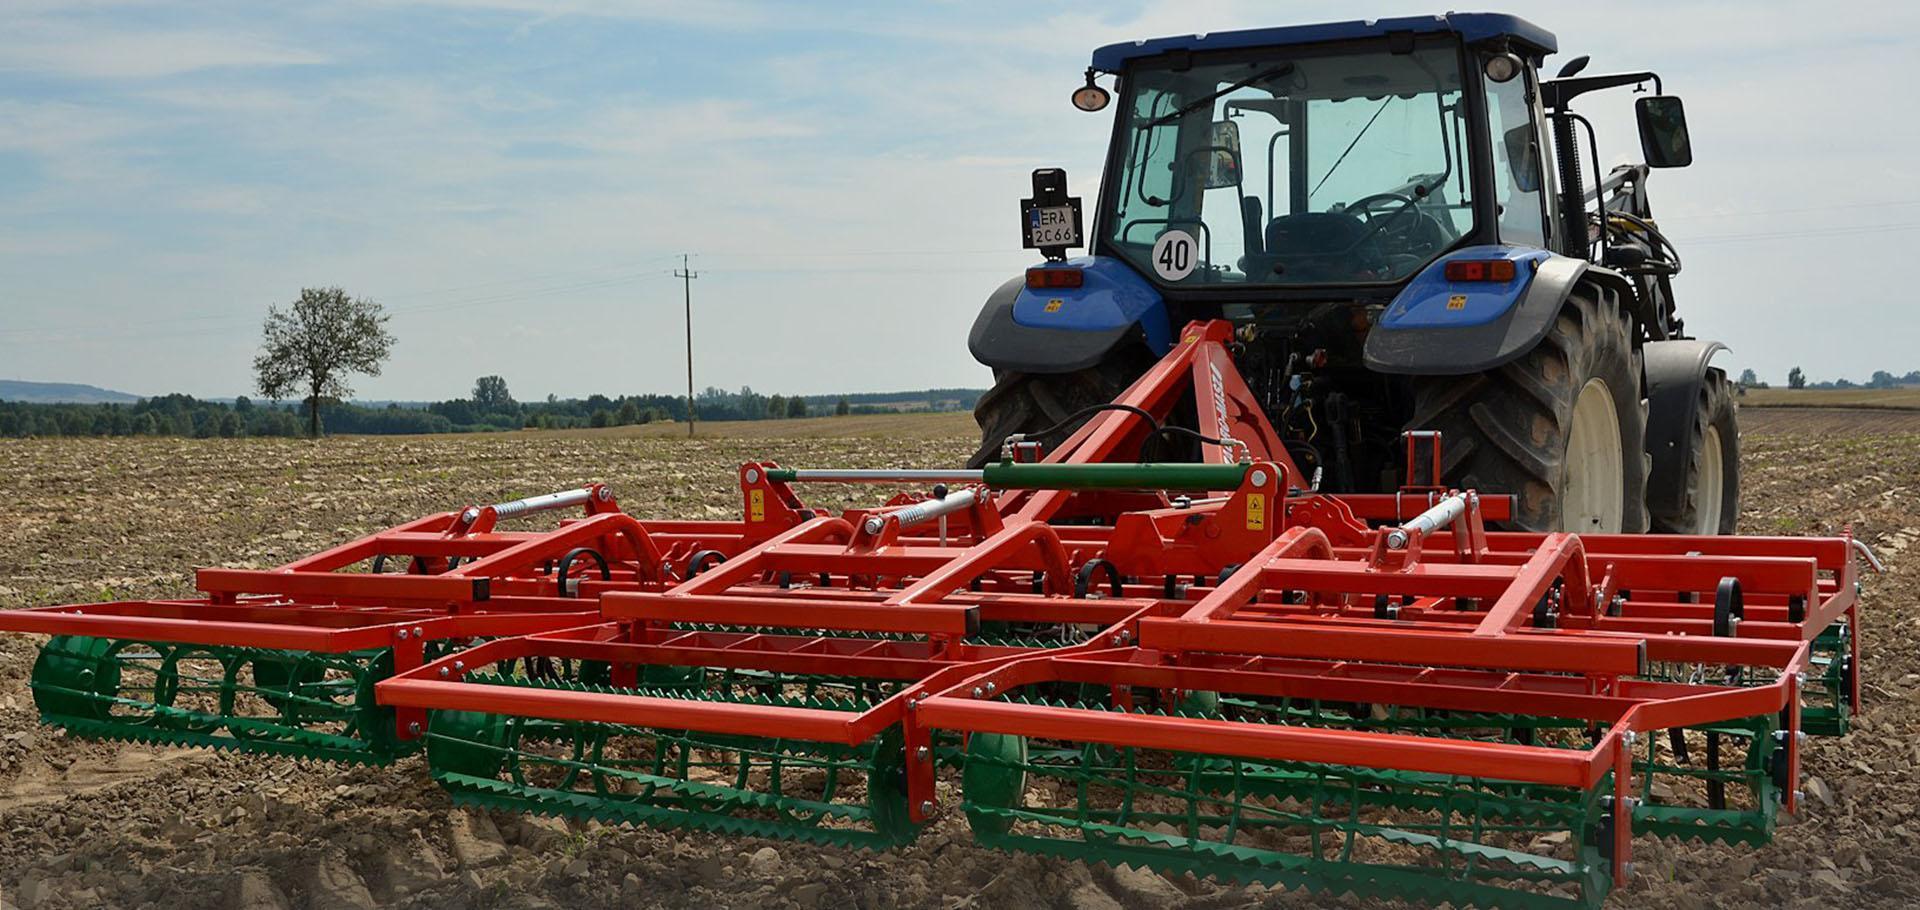 Slajd #2 - traktor i maszyna rolnicza